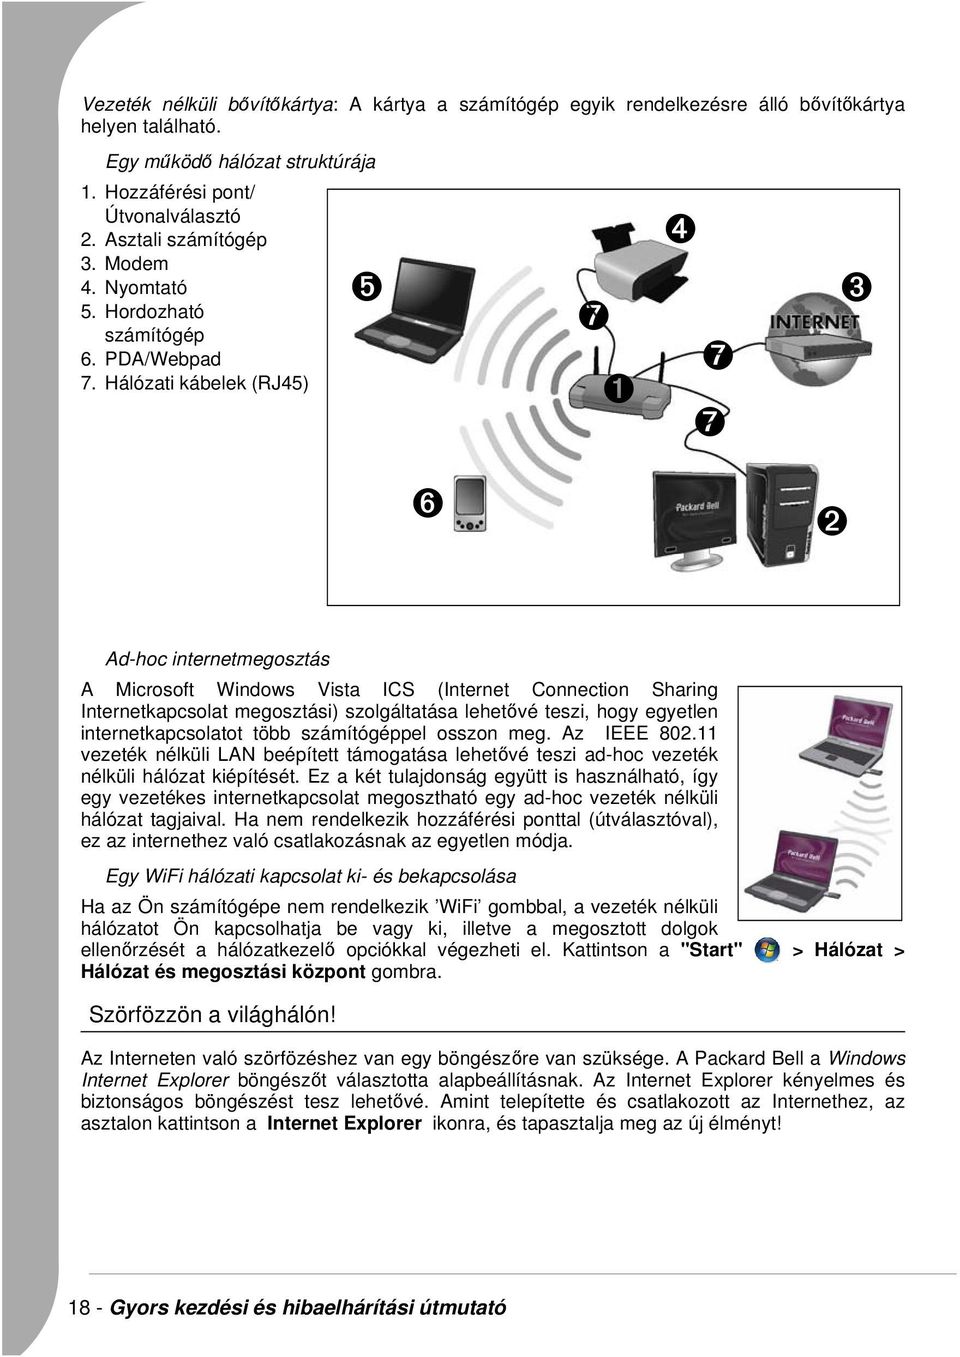 Hálózati kábelek (RJ45) ➊ ➐ ➏ ➋ Ad-hoc internetmegosztás A Microsoft Windows Vista ICS (Internet Connection Sharing Internetkapcsolat megosztási) szolgáltatása lehetővé teszi, hogy egyetlen